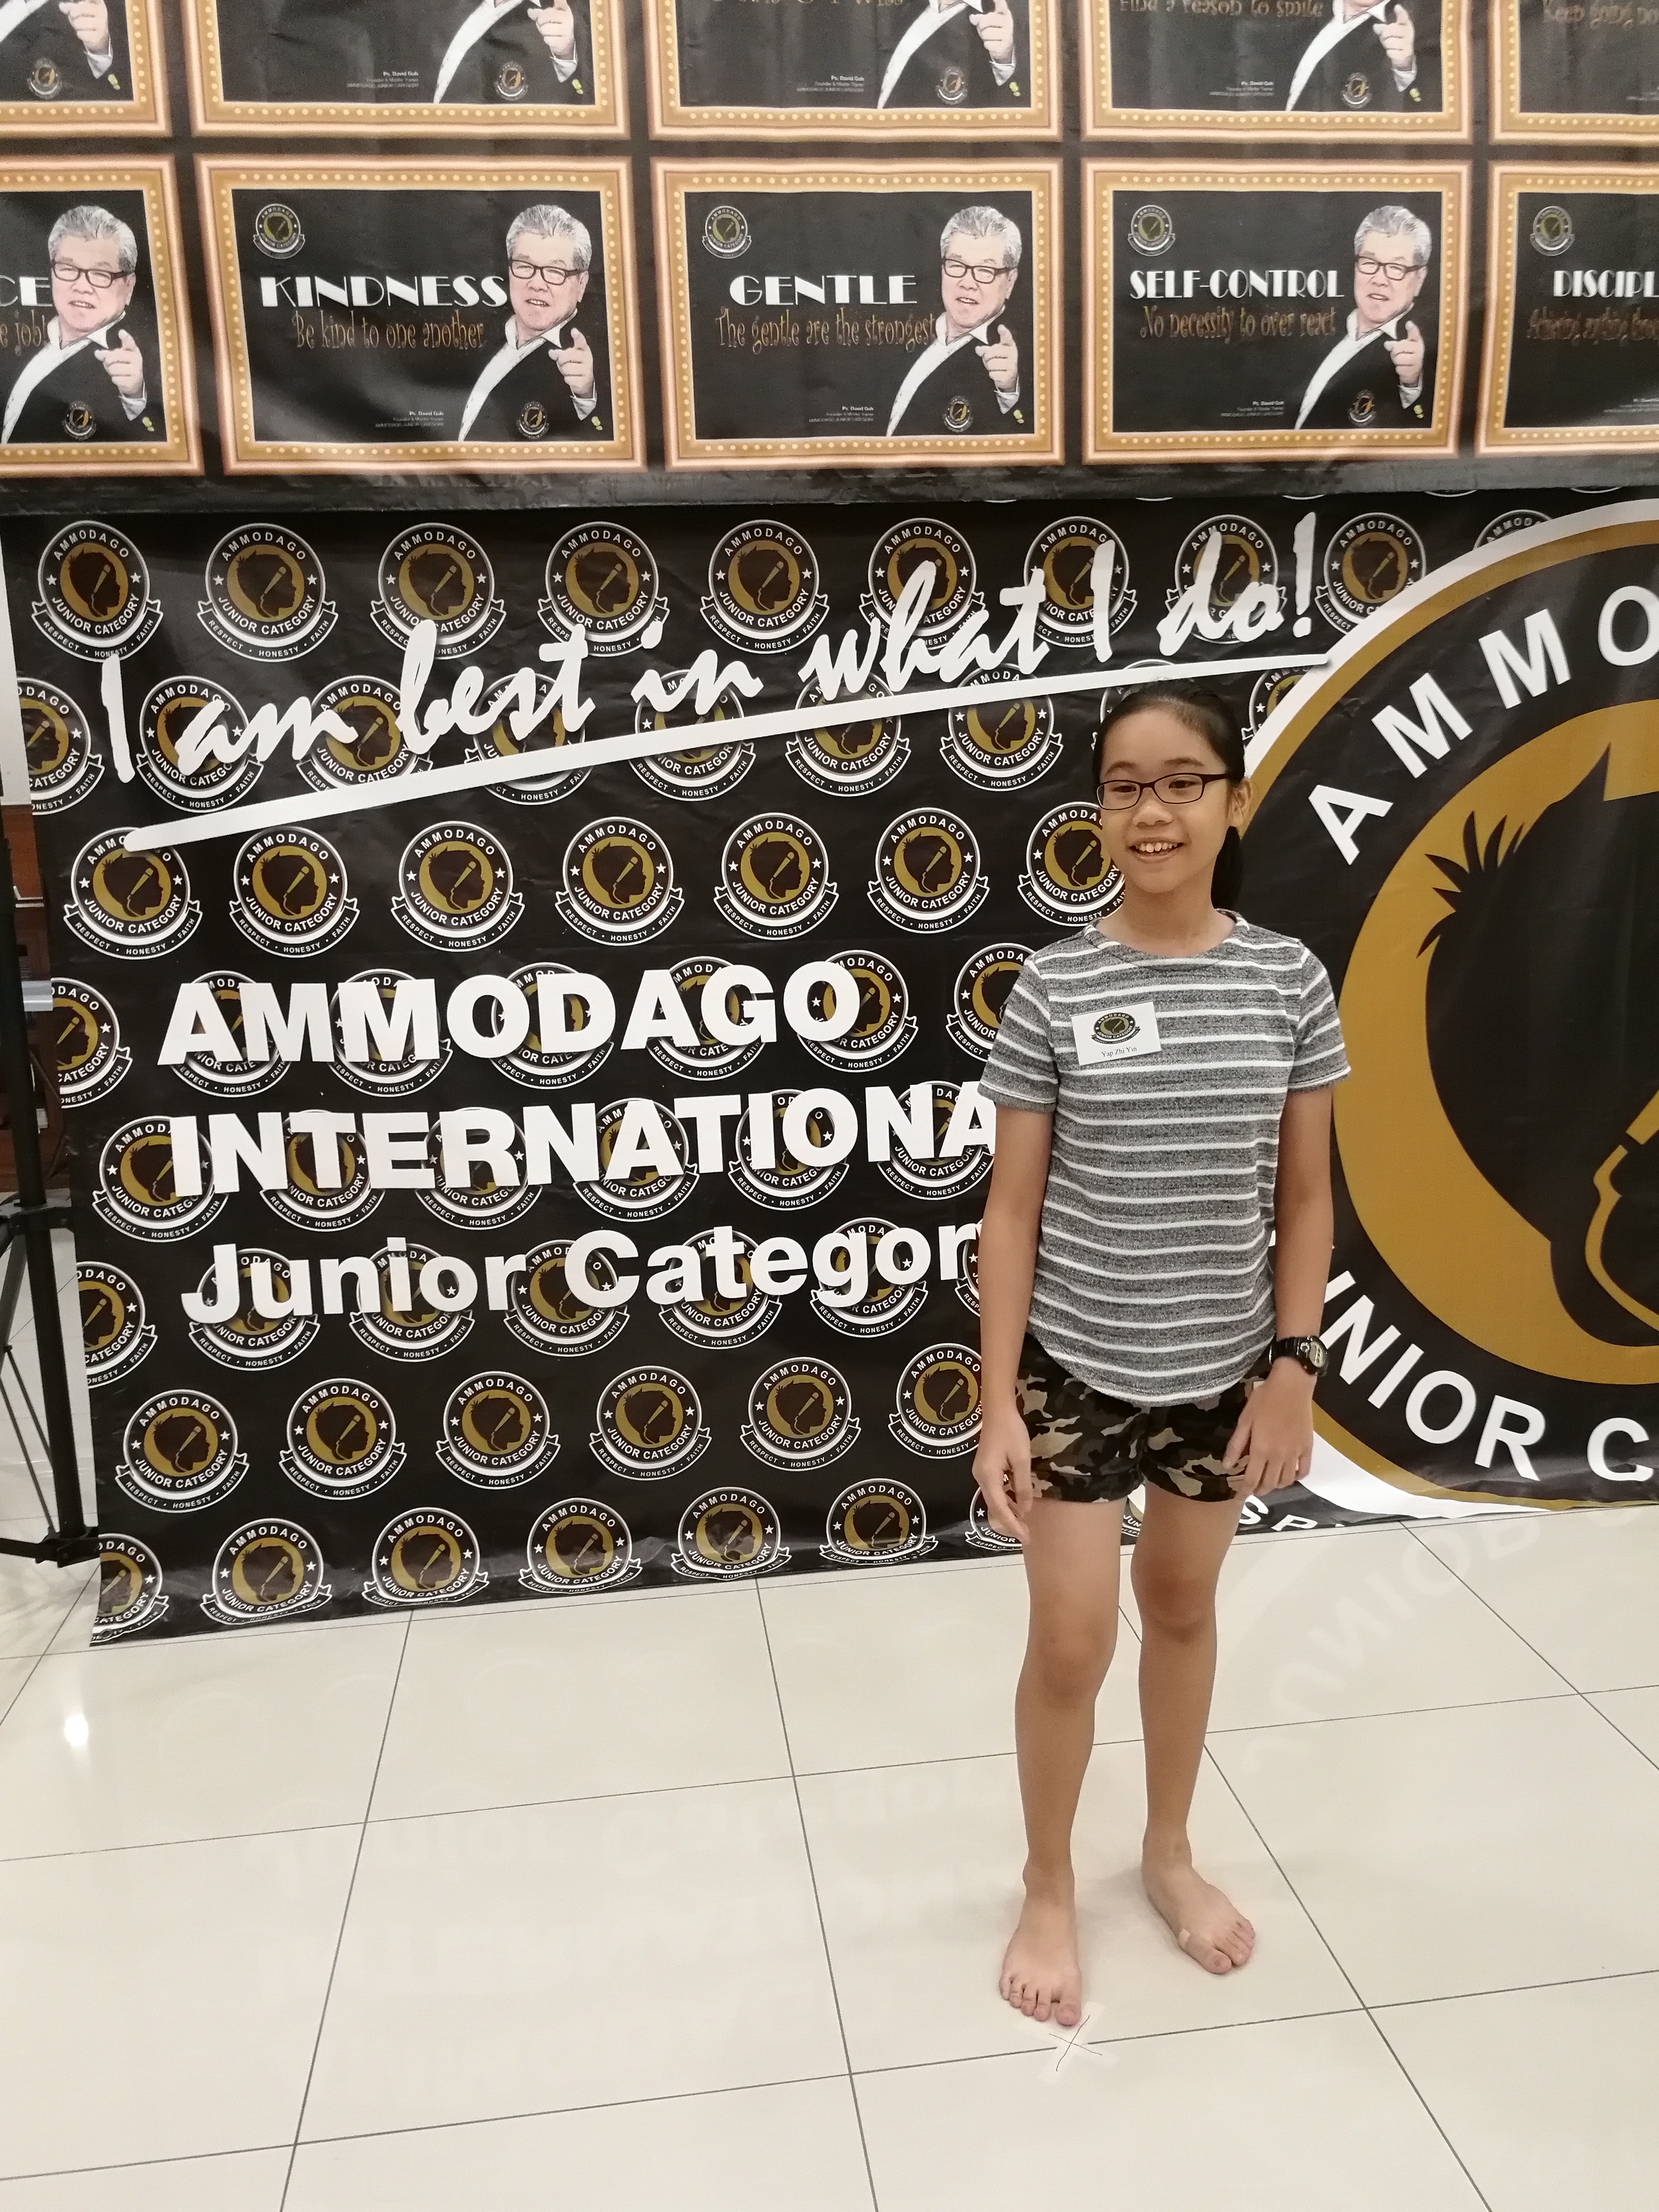 Ammodago International - Junior Category in Malaysia - Master David Goh at Gereja Joy Sogo 苏雅喜乐堂